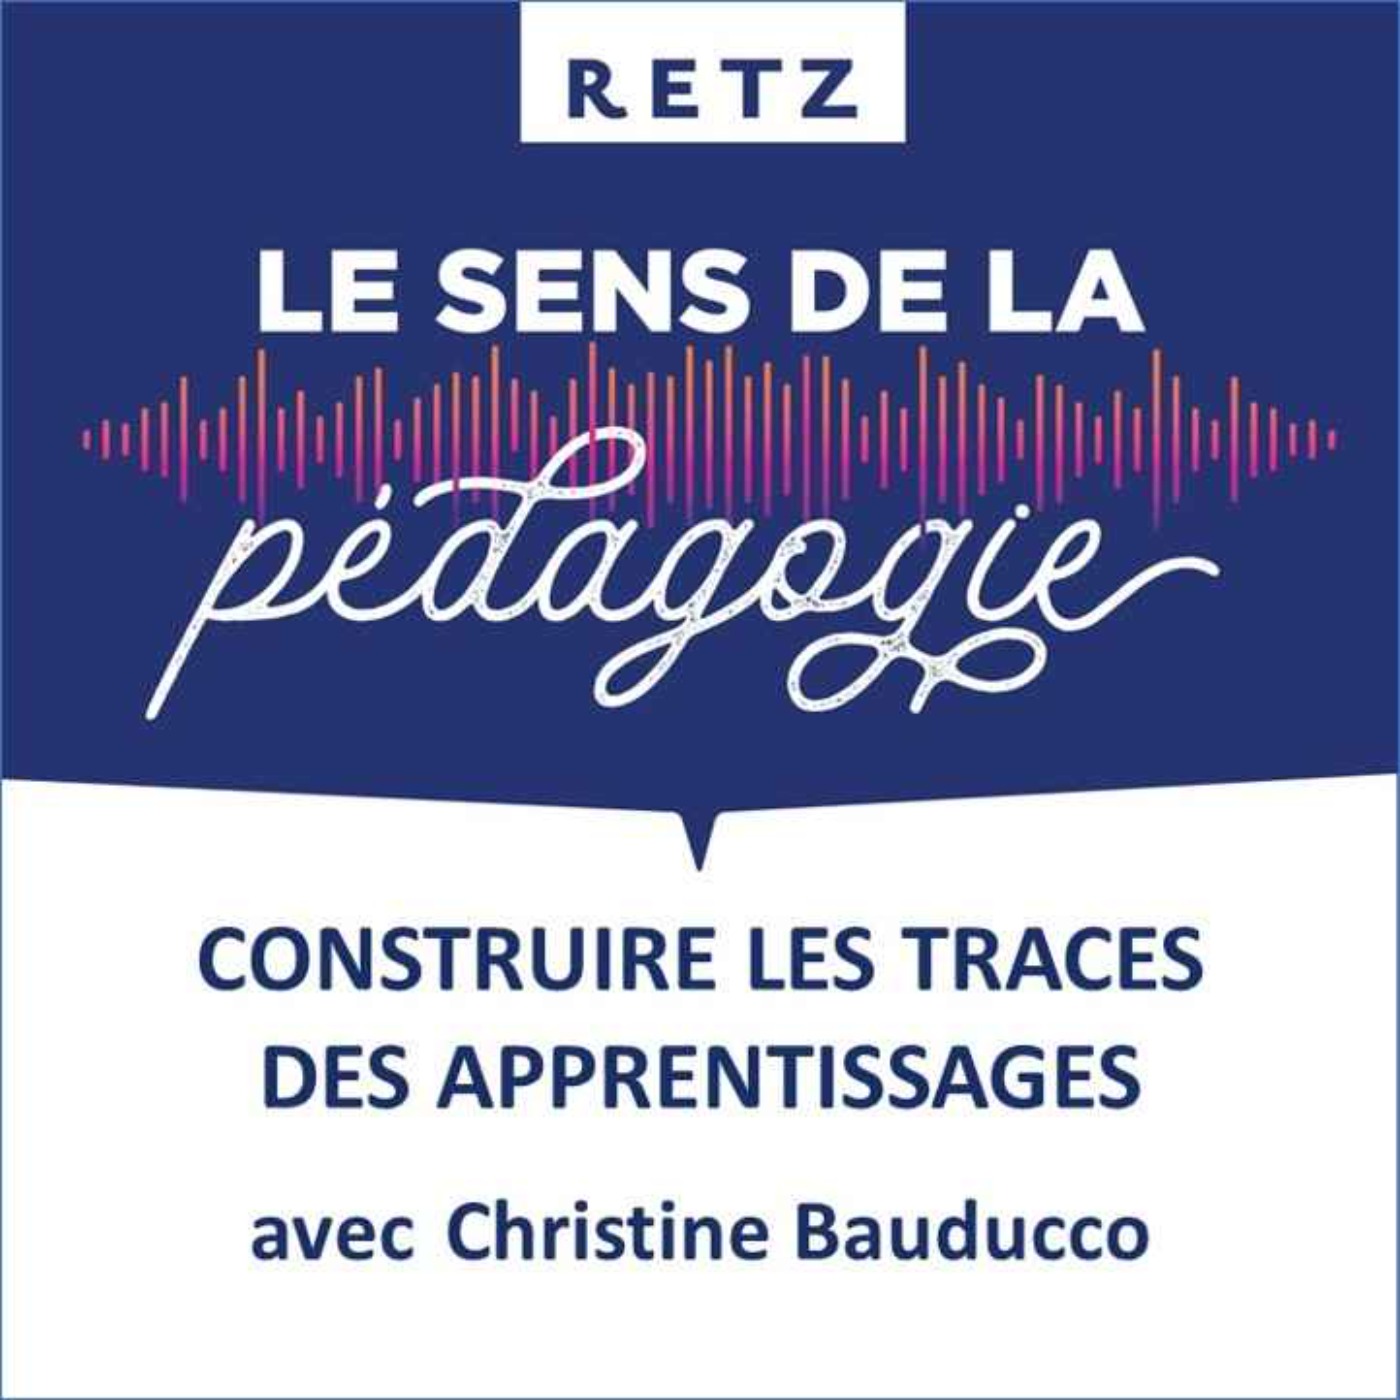 Construire les traces des apprentissages (Christine Bauducco) - #06